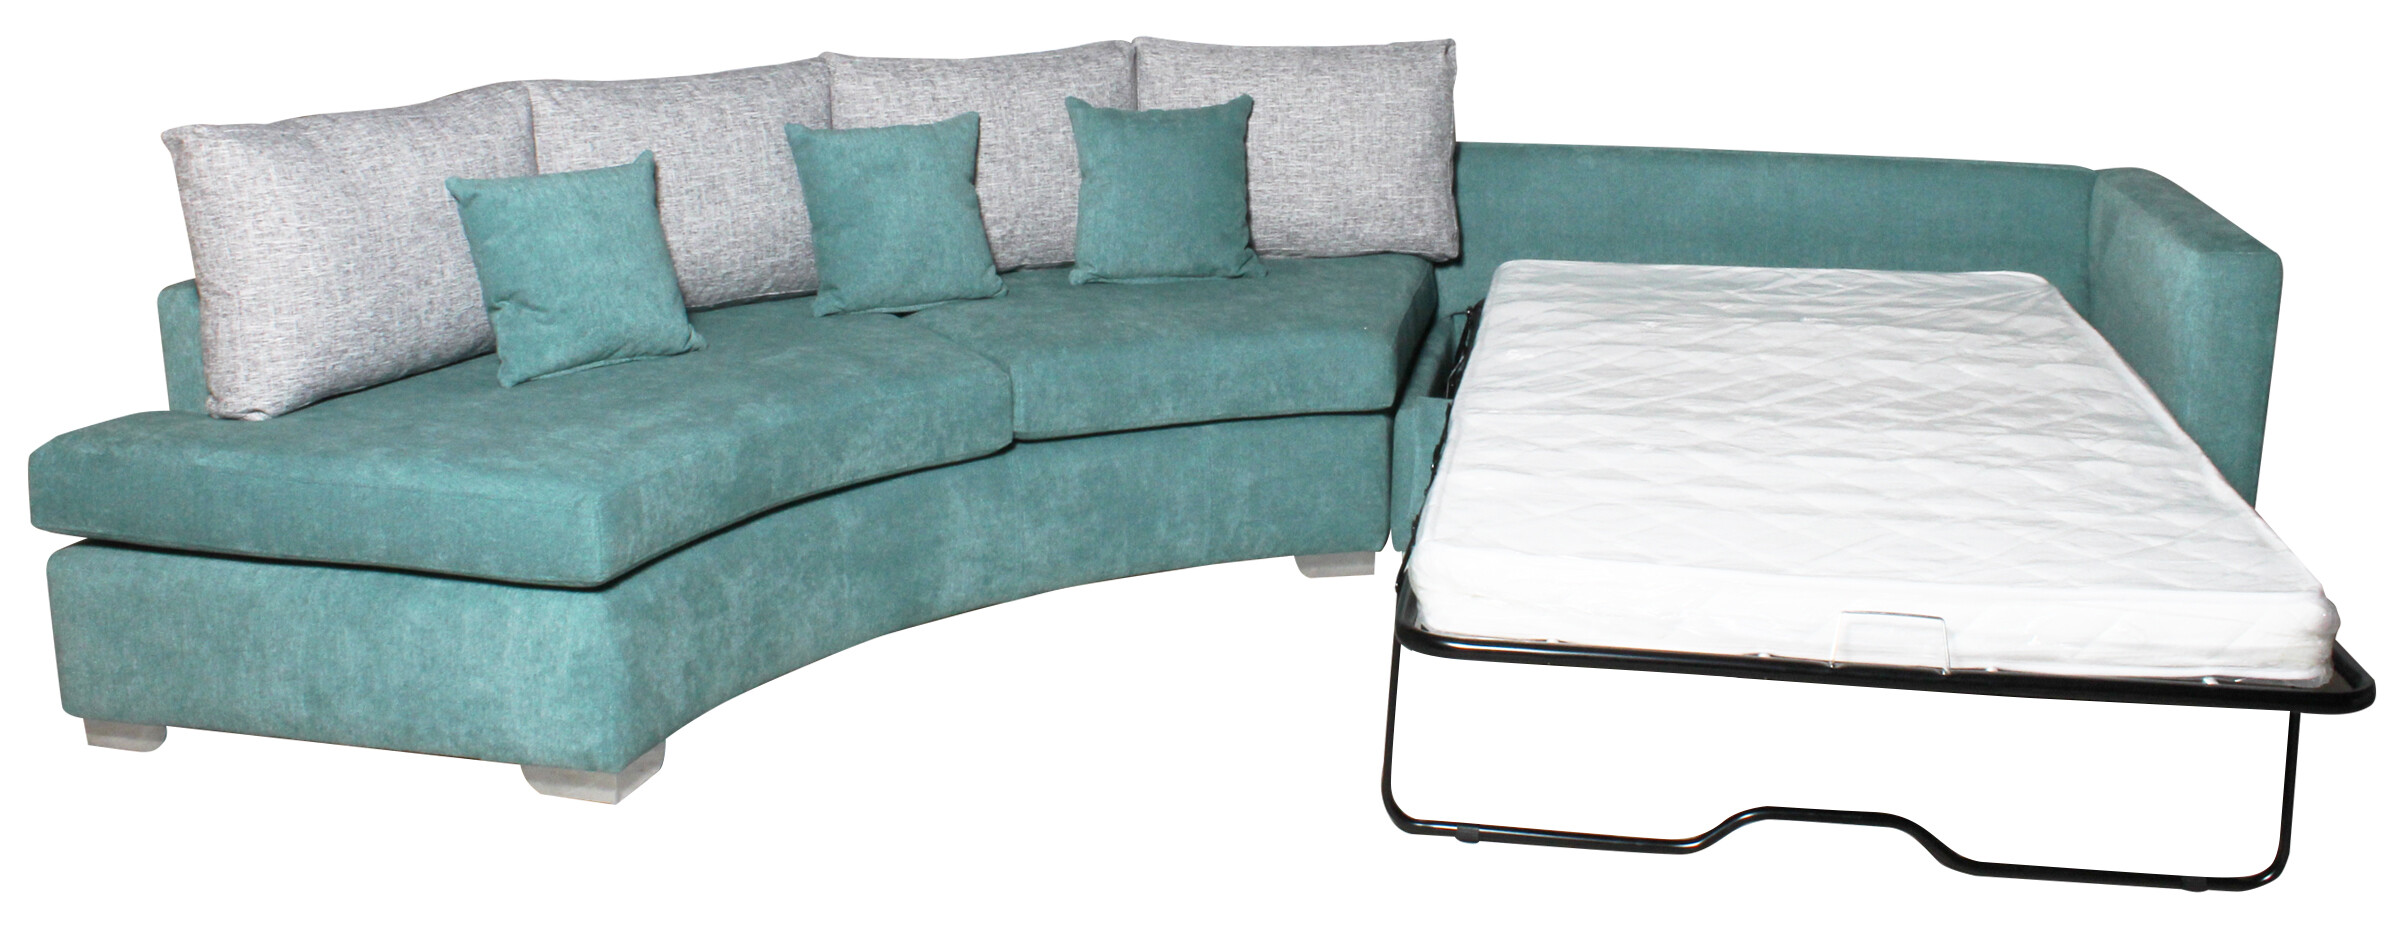 Sofa Modular Cama2